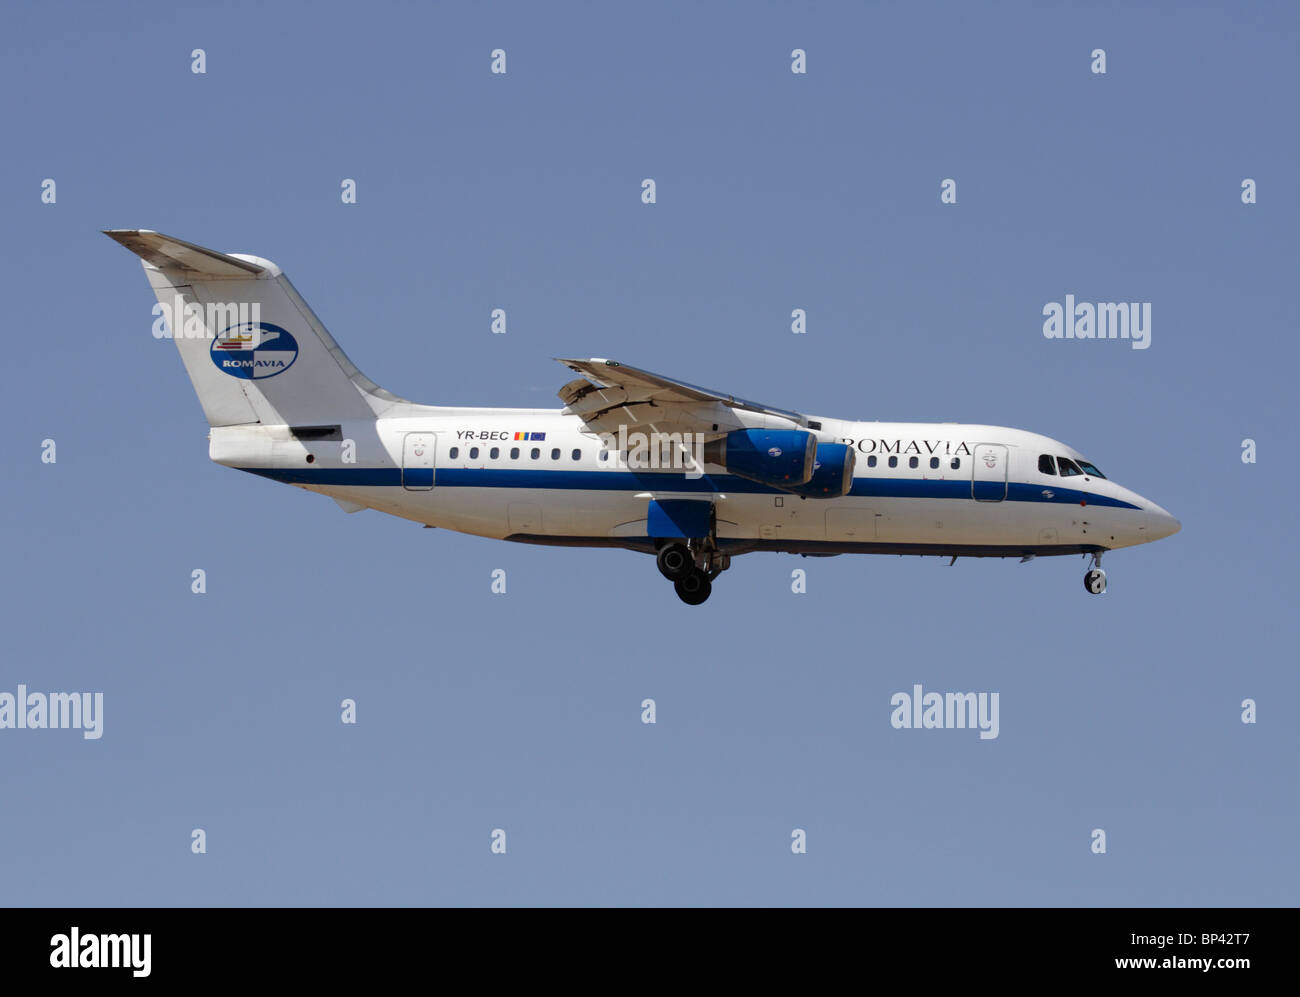 Romavia British Aerospace 146-200 kleine airliner Ansatz. Von der Seite. Stockfoto